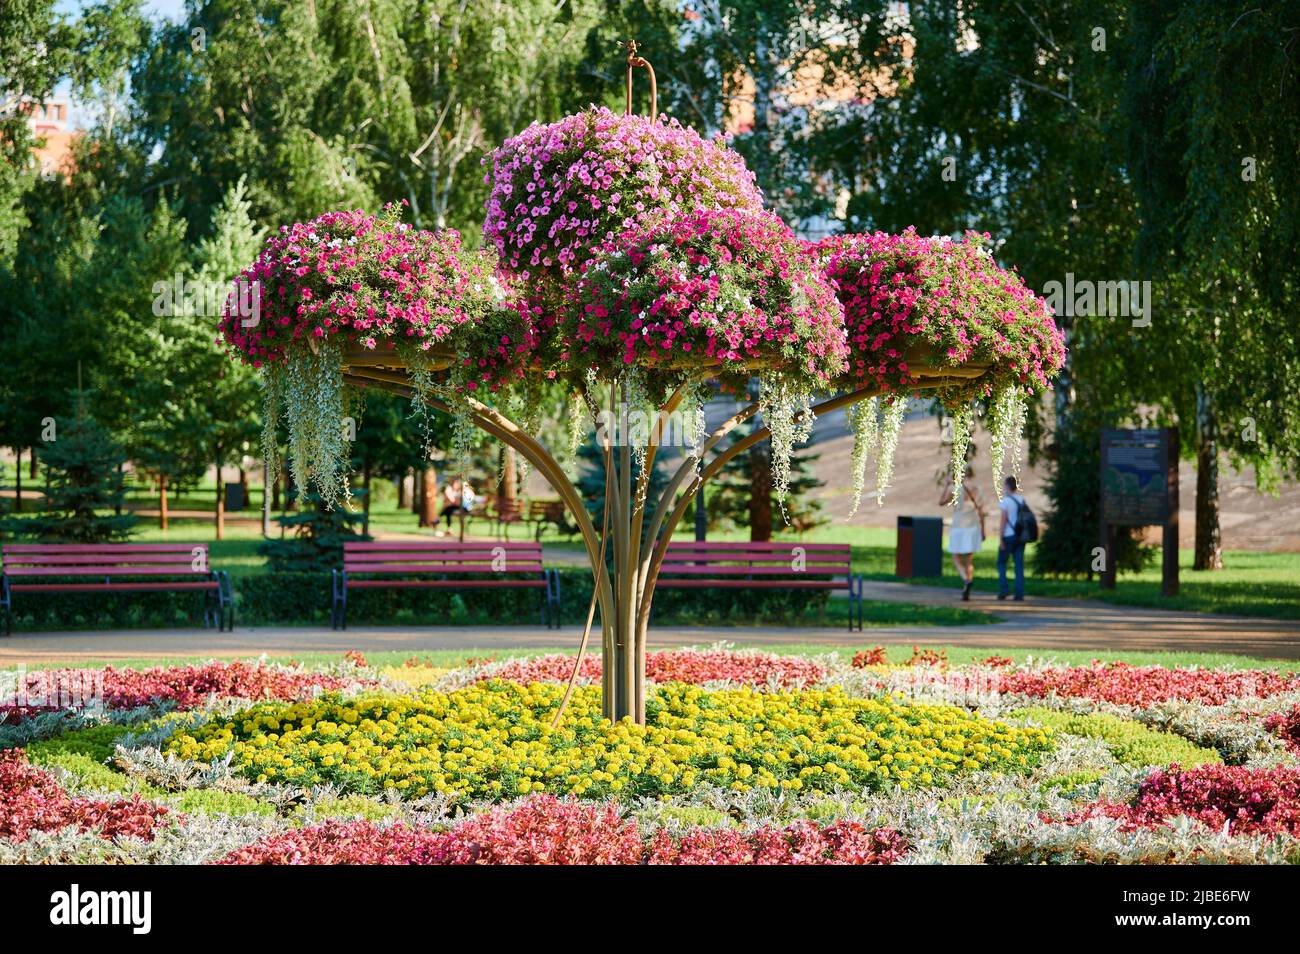 Blumenbeet mit Blumen im städtischen Landschaftspark für Erholung und Spaziergänge, blüht an einem warmen Sommertag Stockfoto